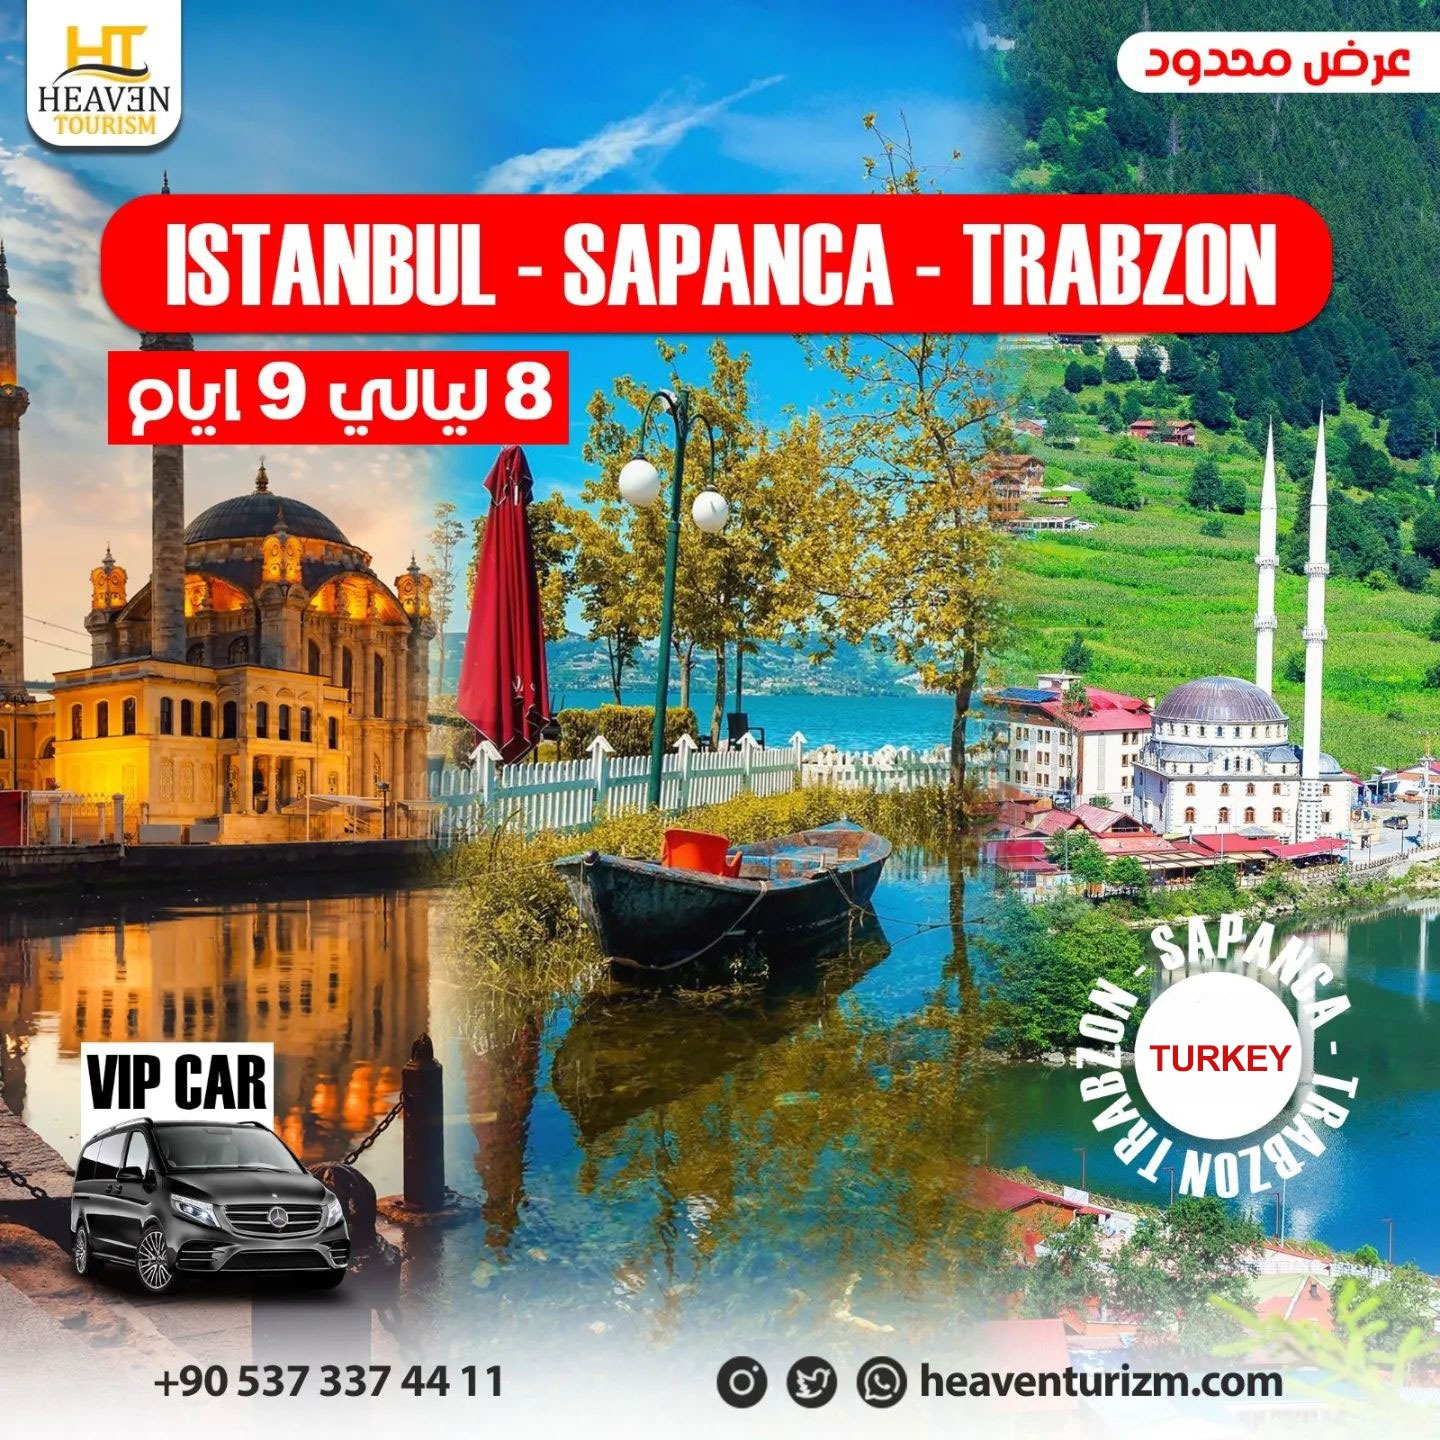 افضل برنامج السياحي في اسطنبول 9 أيام و 8 ليالي